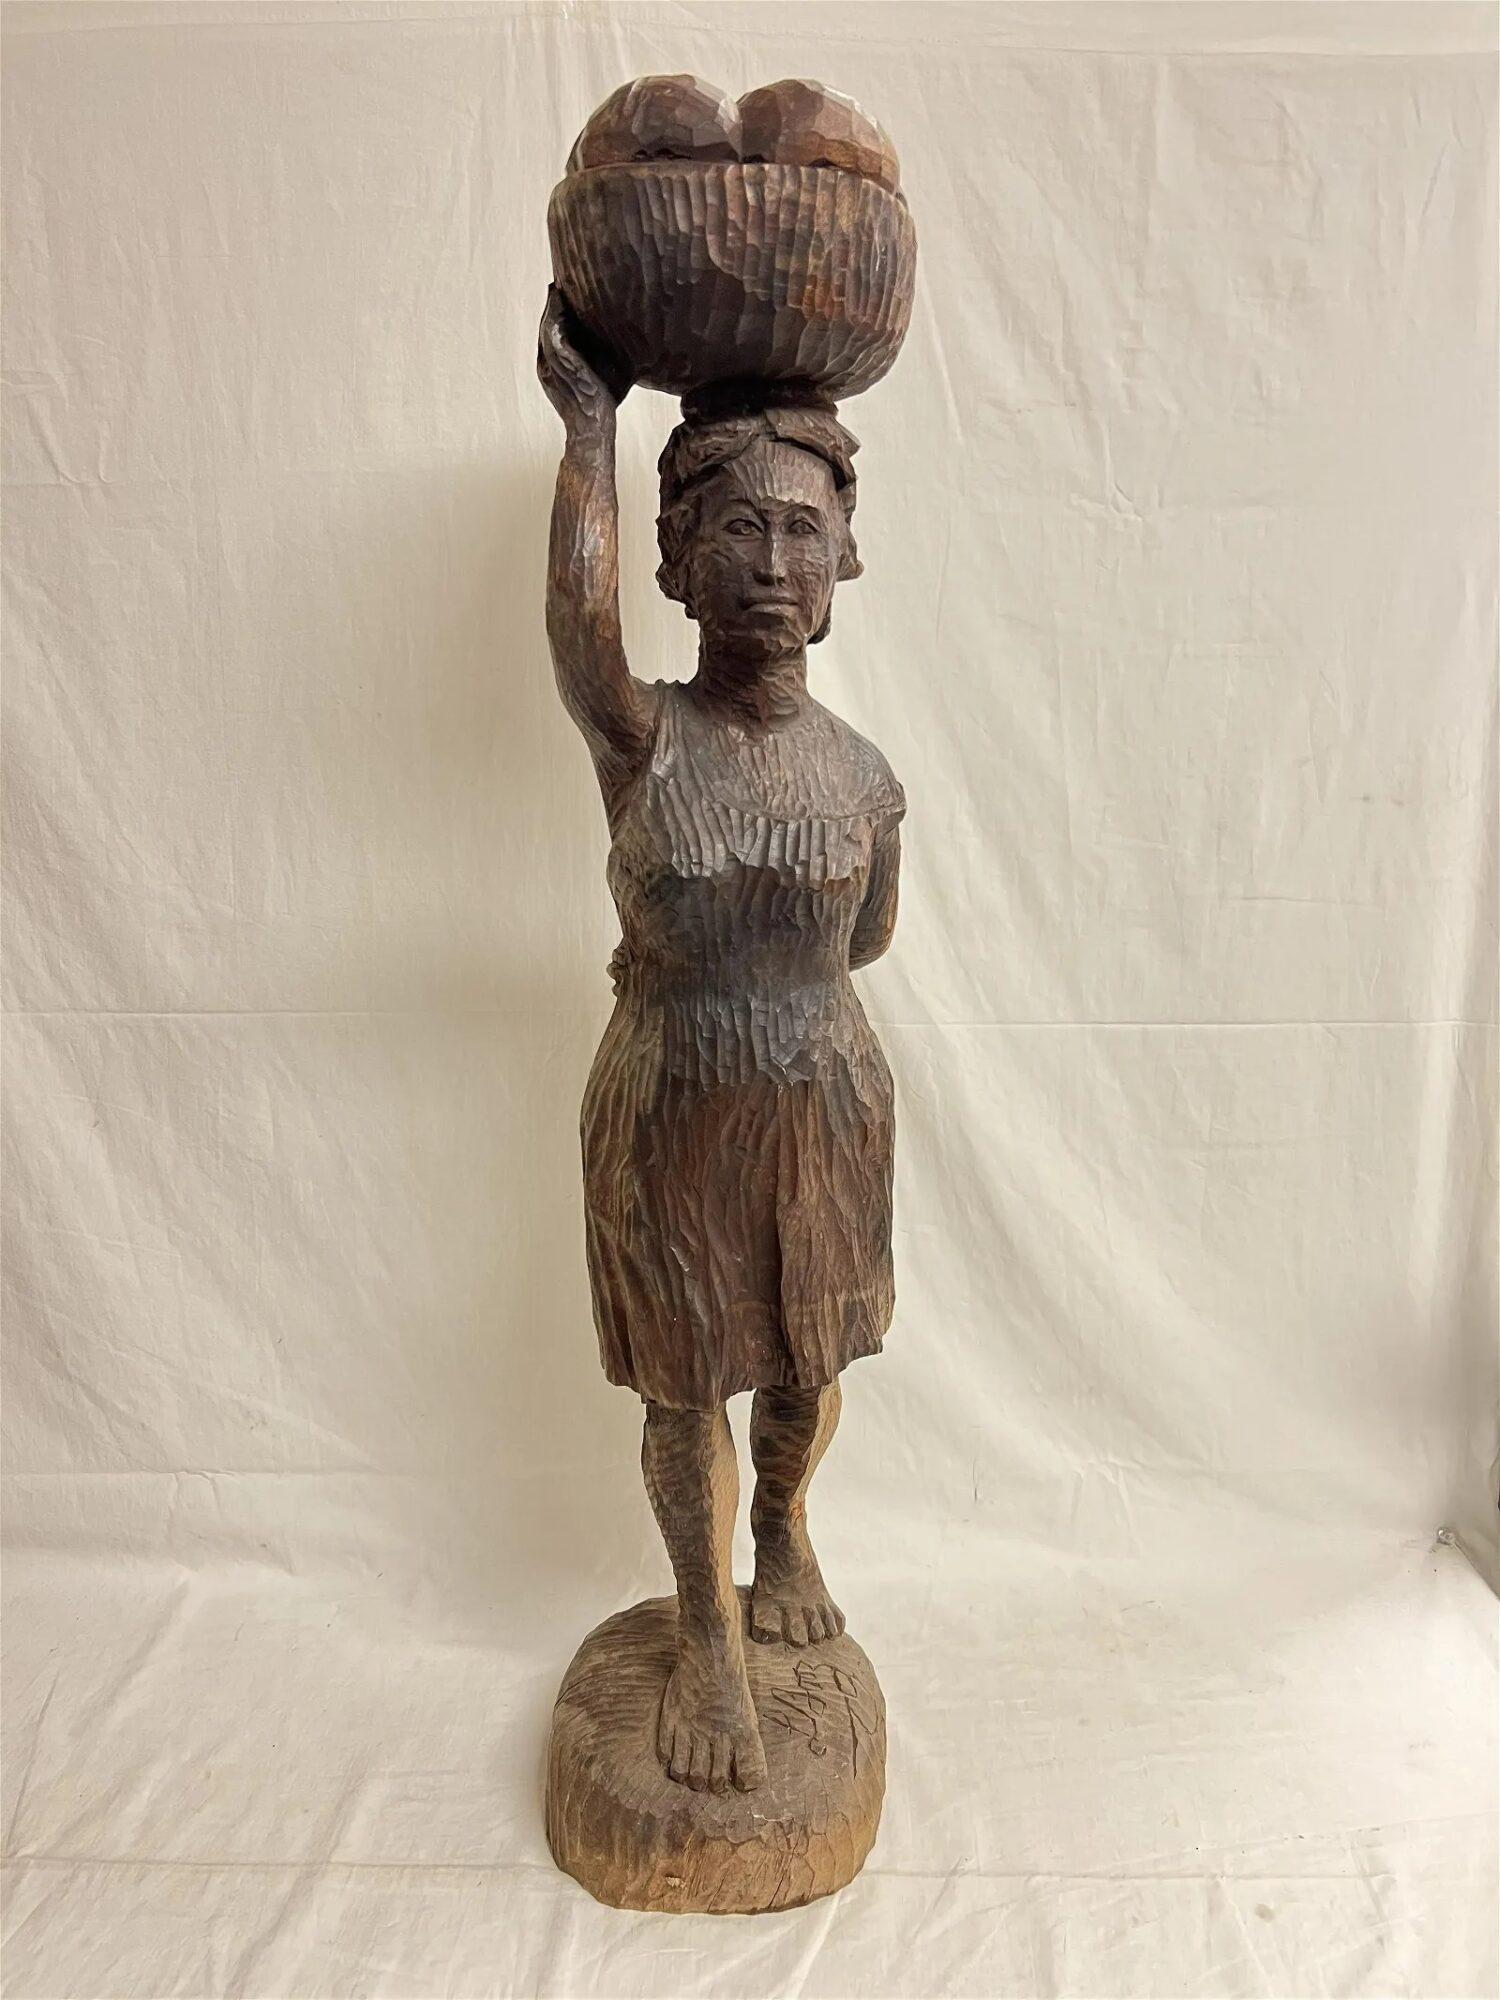 Ludovic Booz sculpture "Haitian b.1940 -La Marchande"